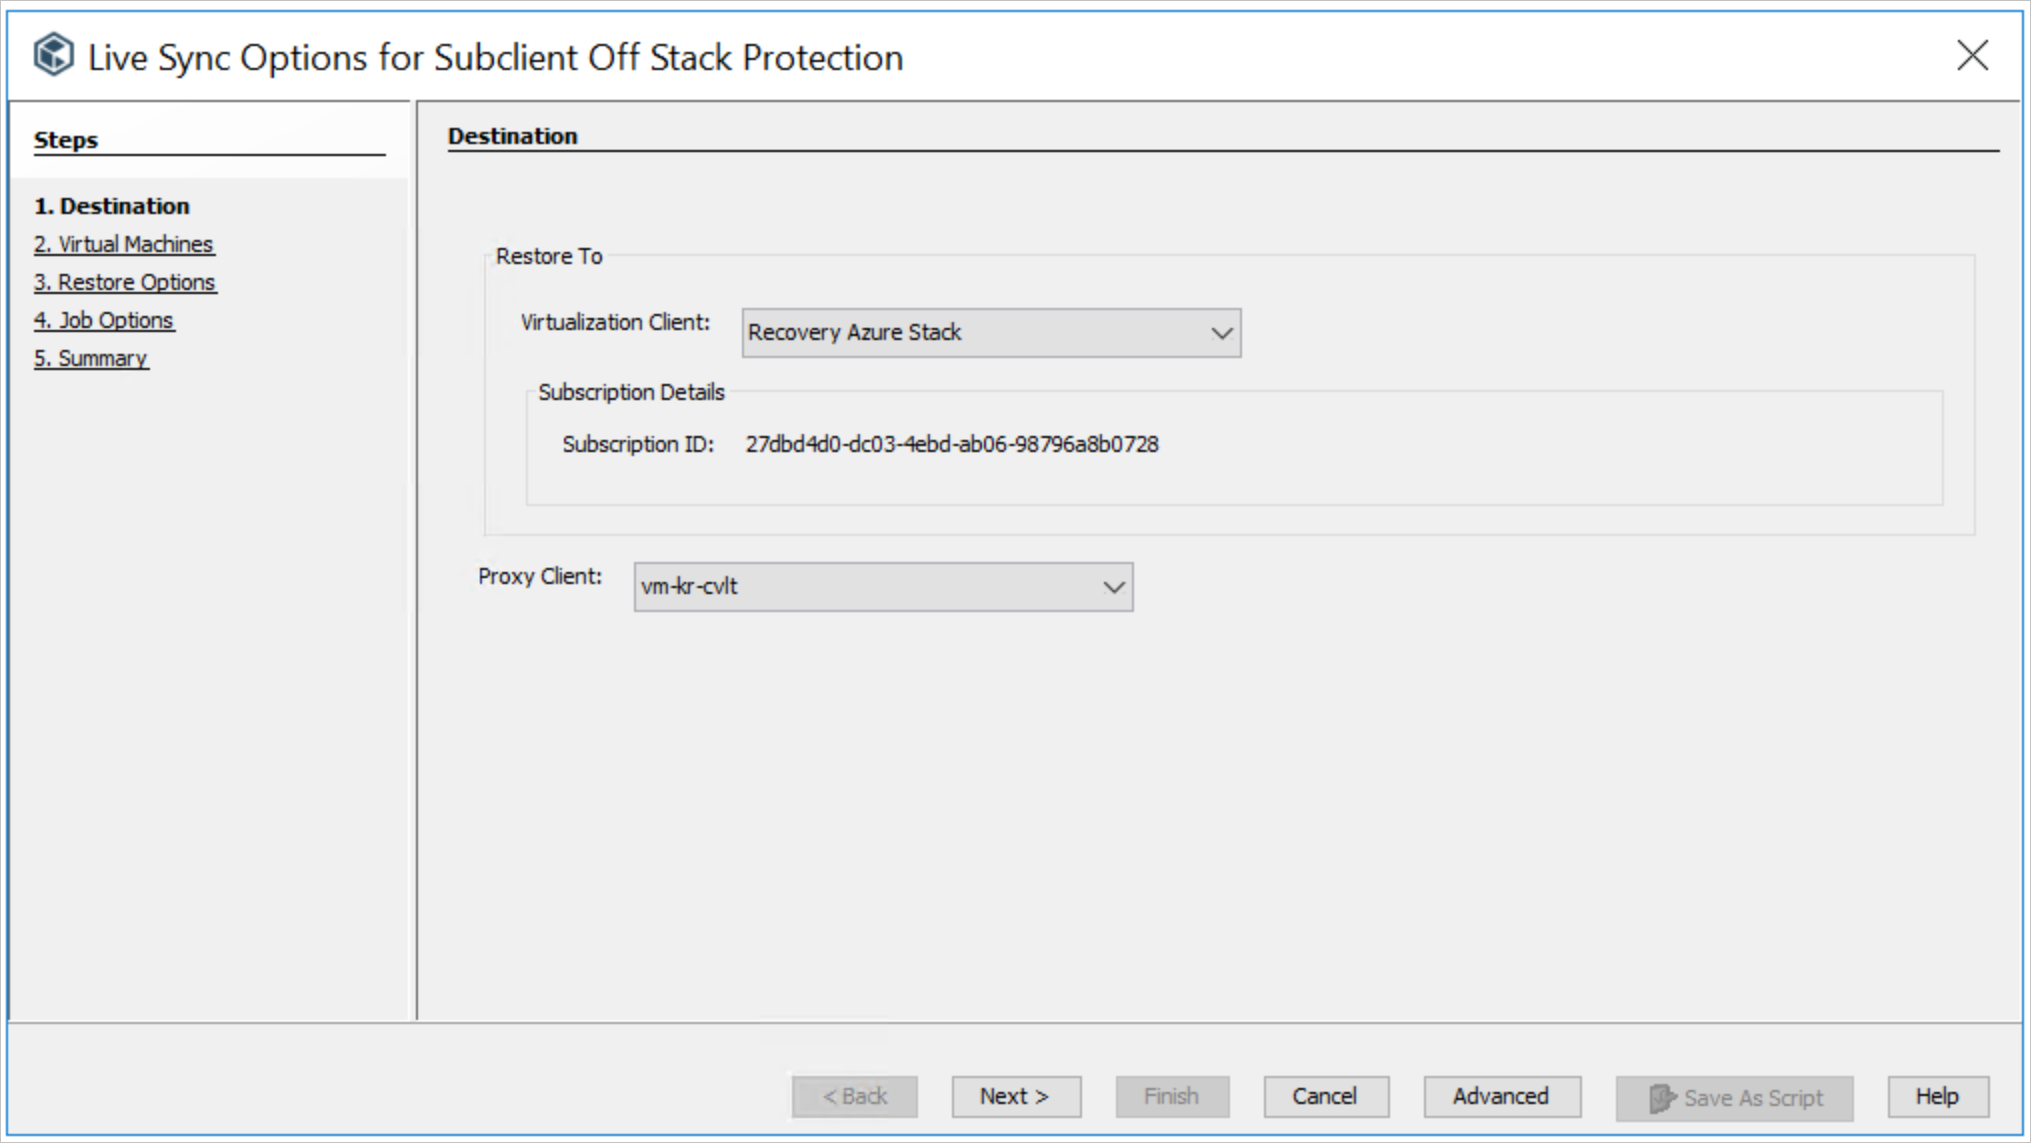 El paso Destino de las opciones de Live Sync para Subclient Off Stack Protection wizard (Asistente para protección fuera de pila de subcliente) incluye cuadros de lista para especificar el cliente de virtualización y el cliente proxy.